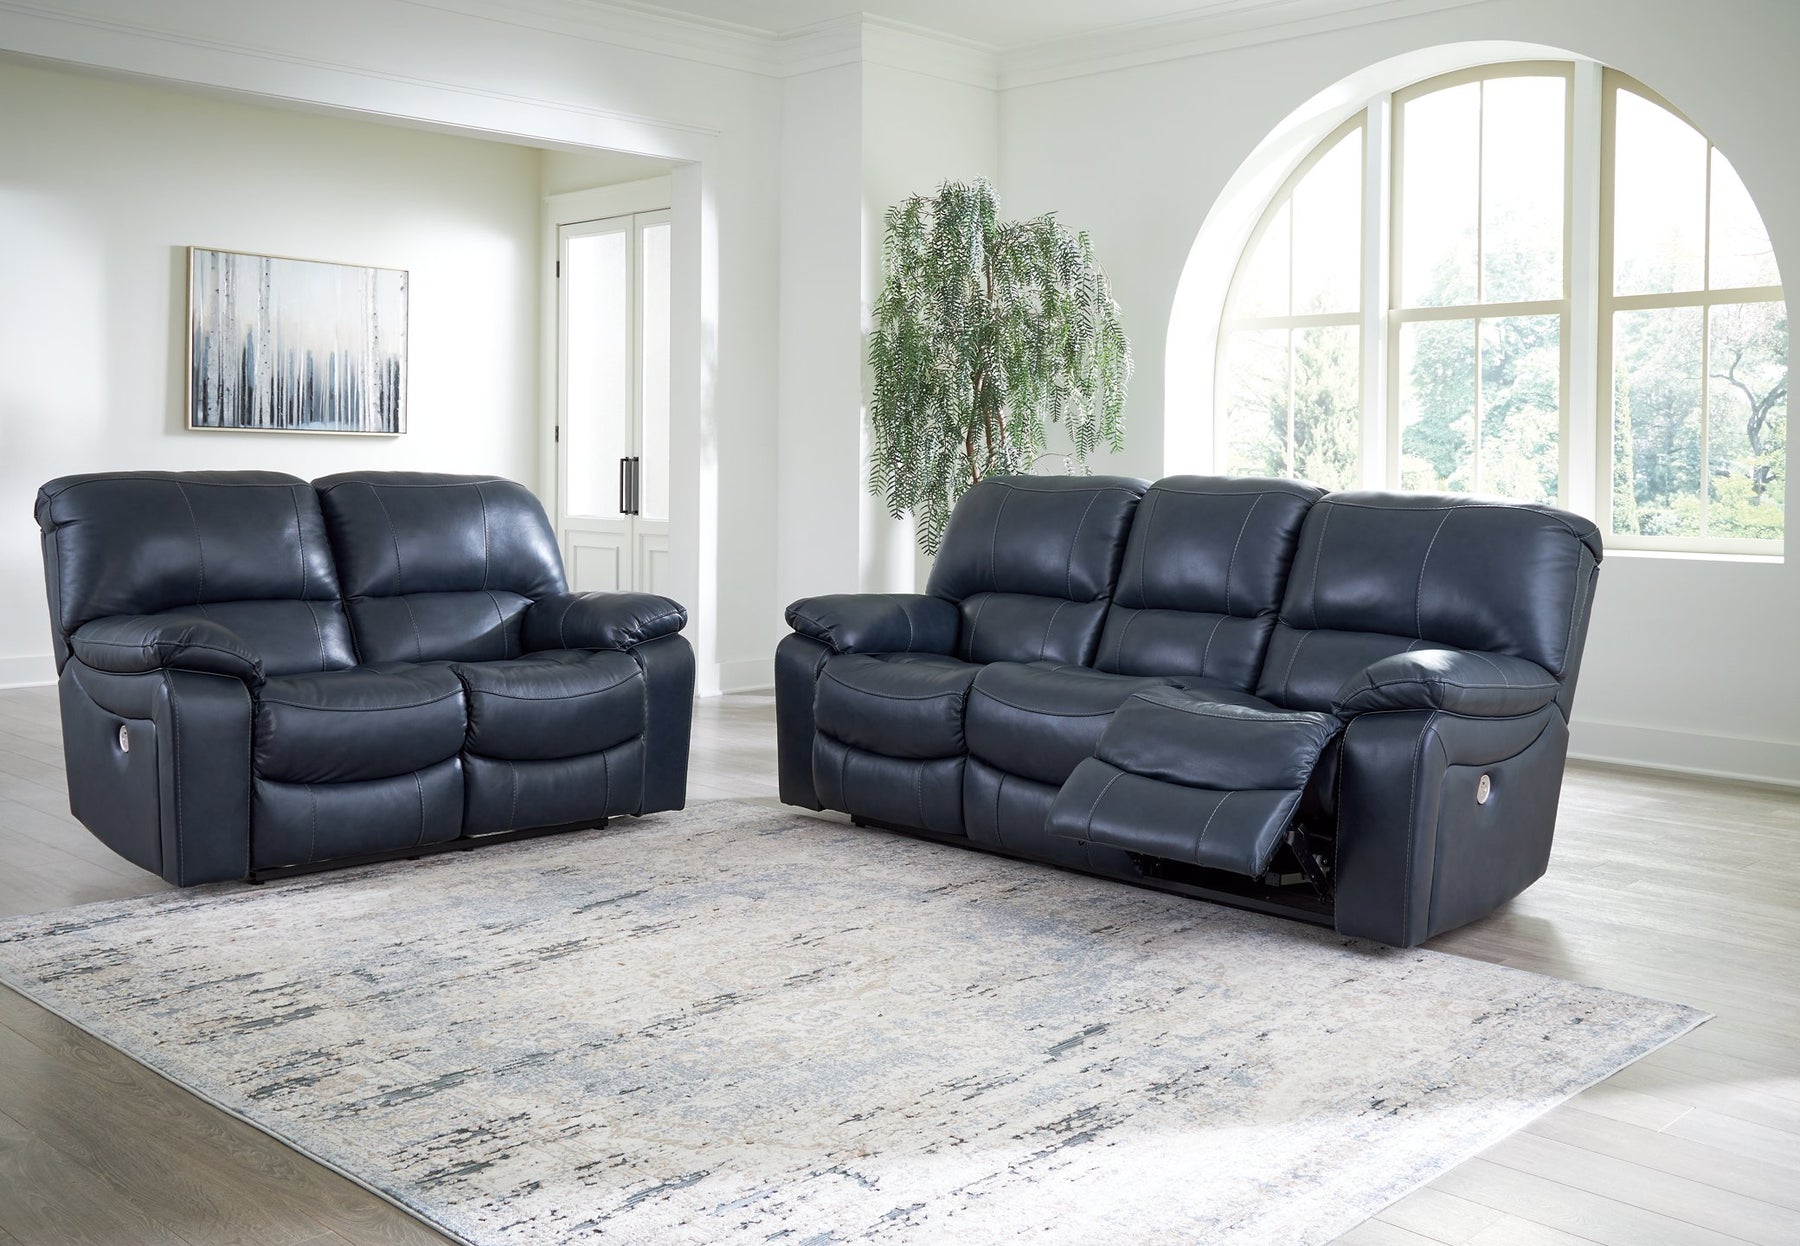 Leesworth Living Room Set - Half Price Furniture